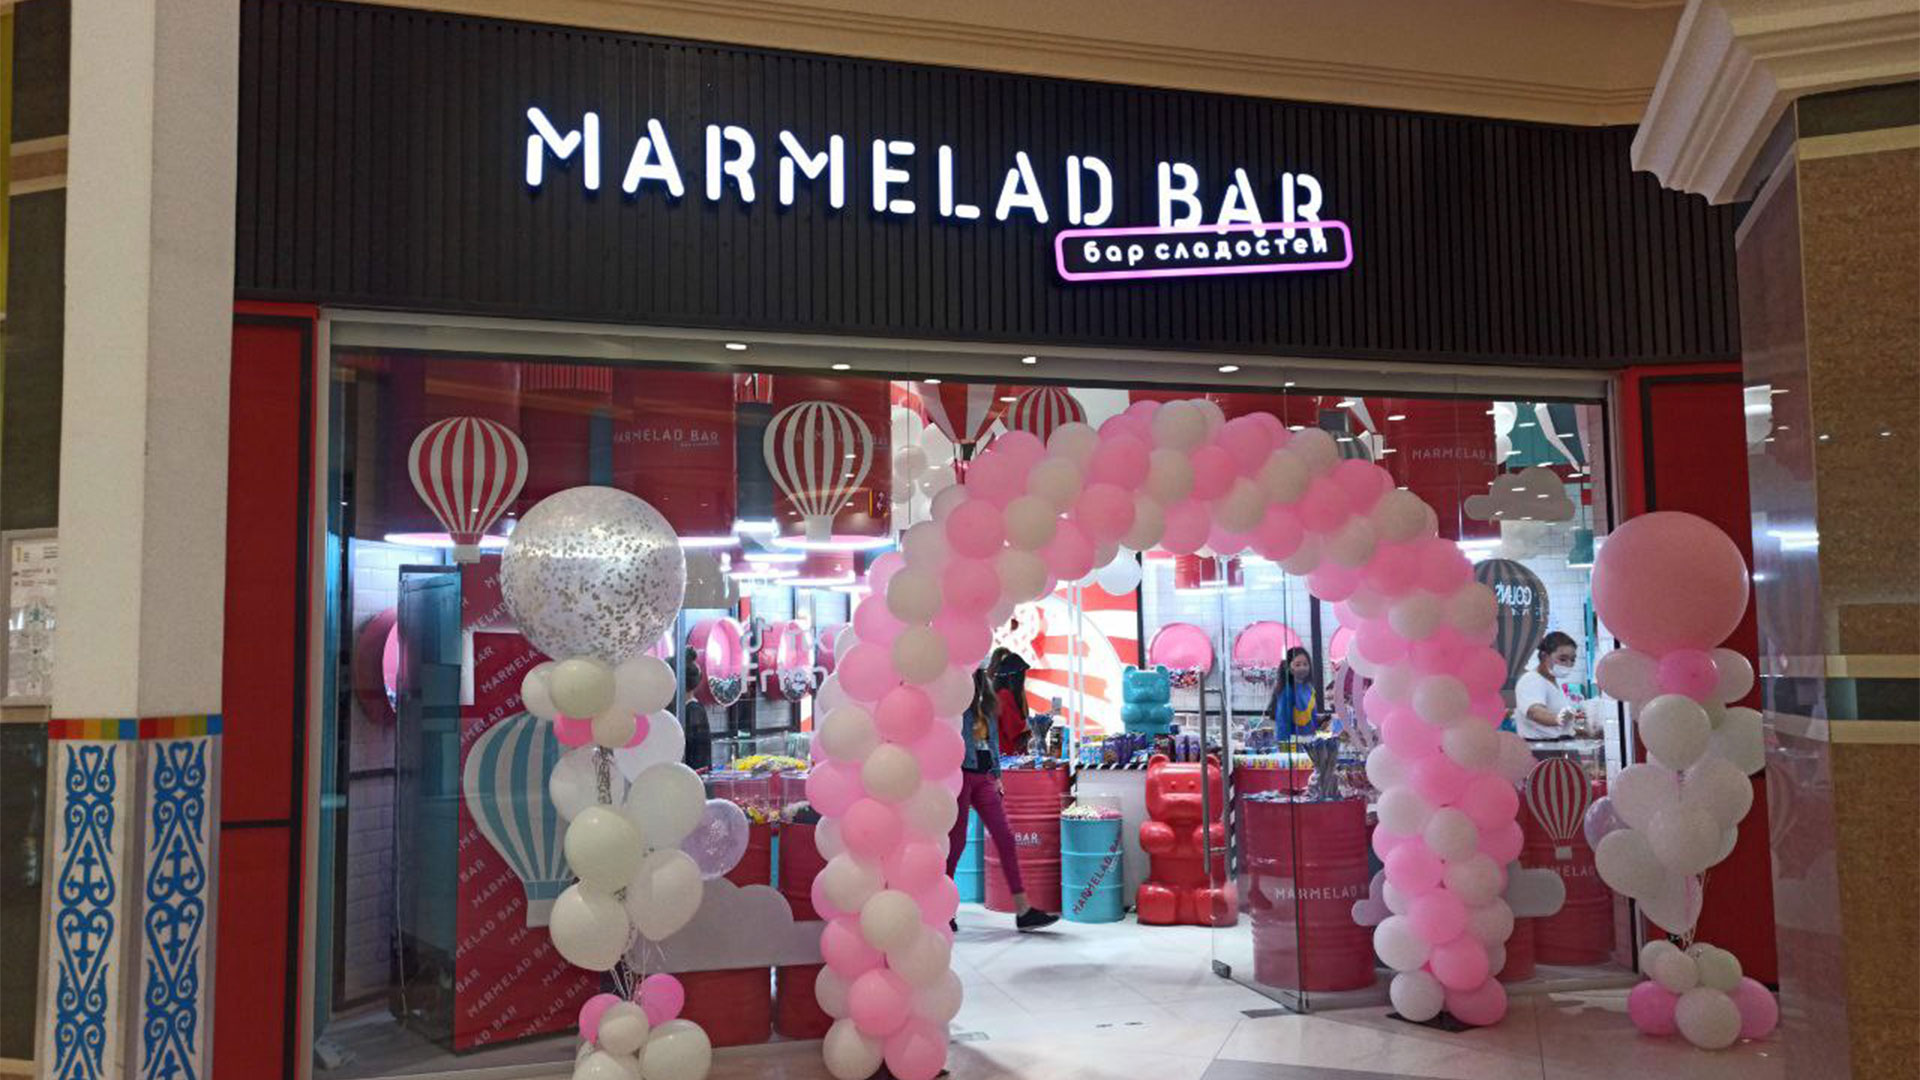 Производство рекламы “Marmelad bar”​